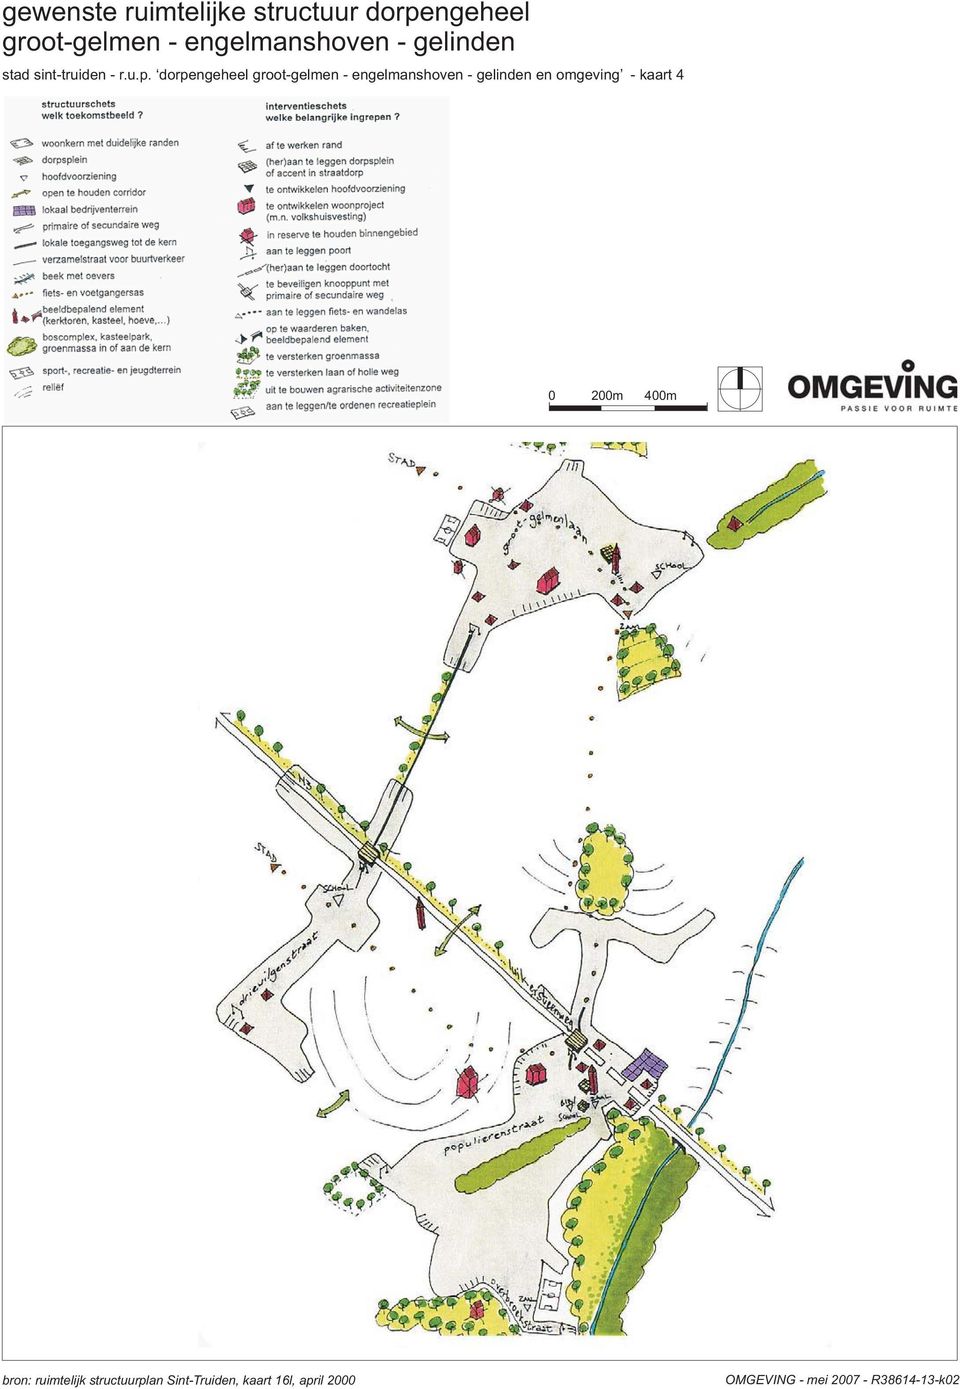 dorpengeheel groot-gelmen - engelmanshoven - gelinden en omgeving - kaart 4